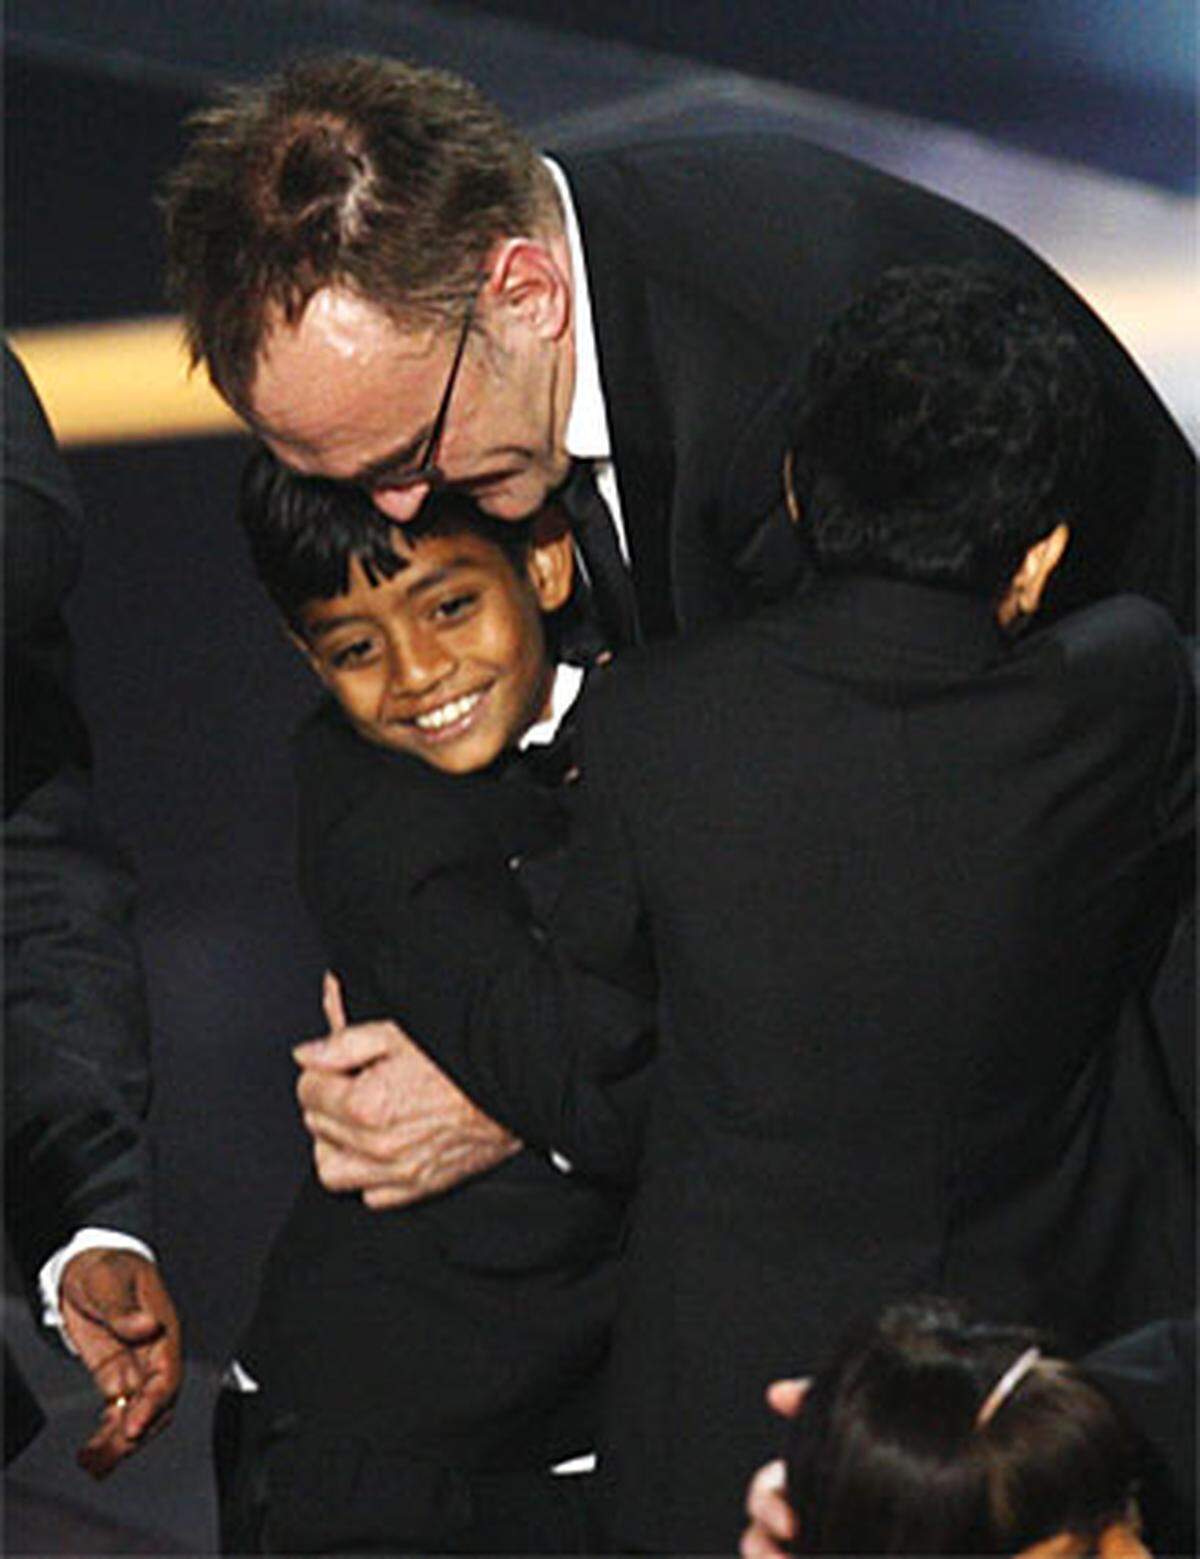 Der Preis für den Besten Regisseur ging an Danny Boyle. Auch die Musik und der Song des indischen Komponisten A. R. Rahman wurden ausgezeichnet. Die Oscars für das Beste adaptierte Drehbuch (Simon Beaufoy), und die Beste Kamera (Anthony Dod Mantle) gingen ebenfalls an "Slumdog Millionär", ebenso wie die Trophäen für den Besten Ton und den Besten Schnitt.